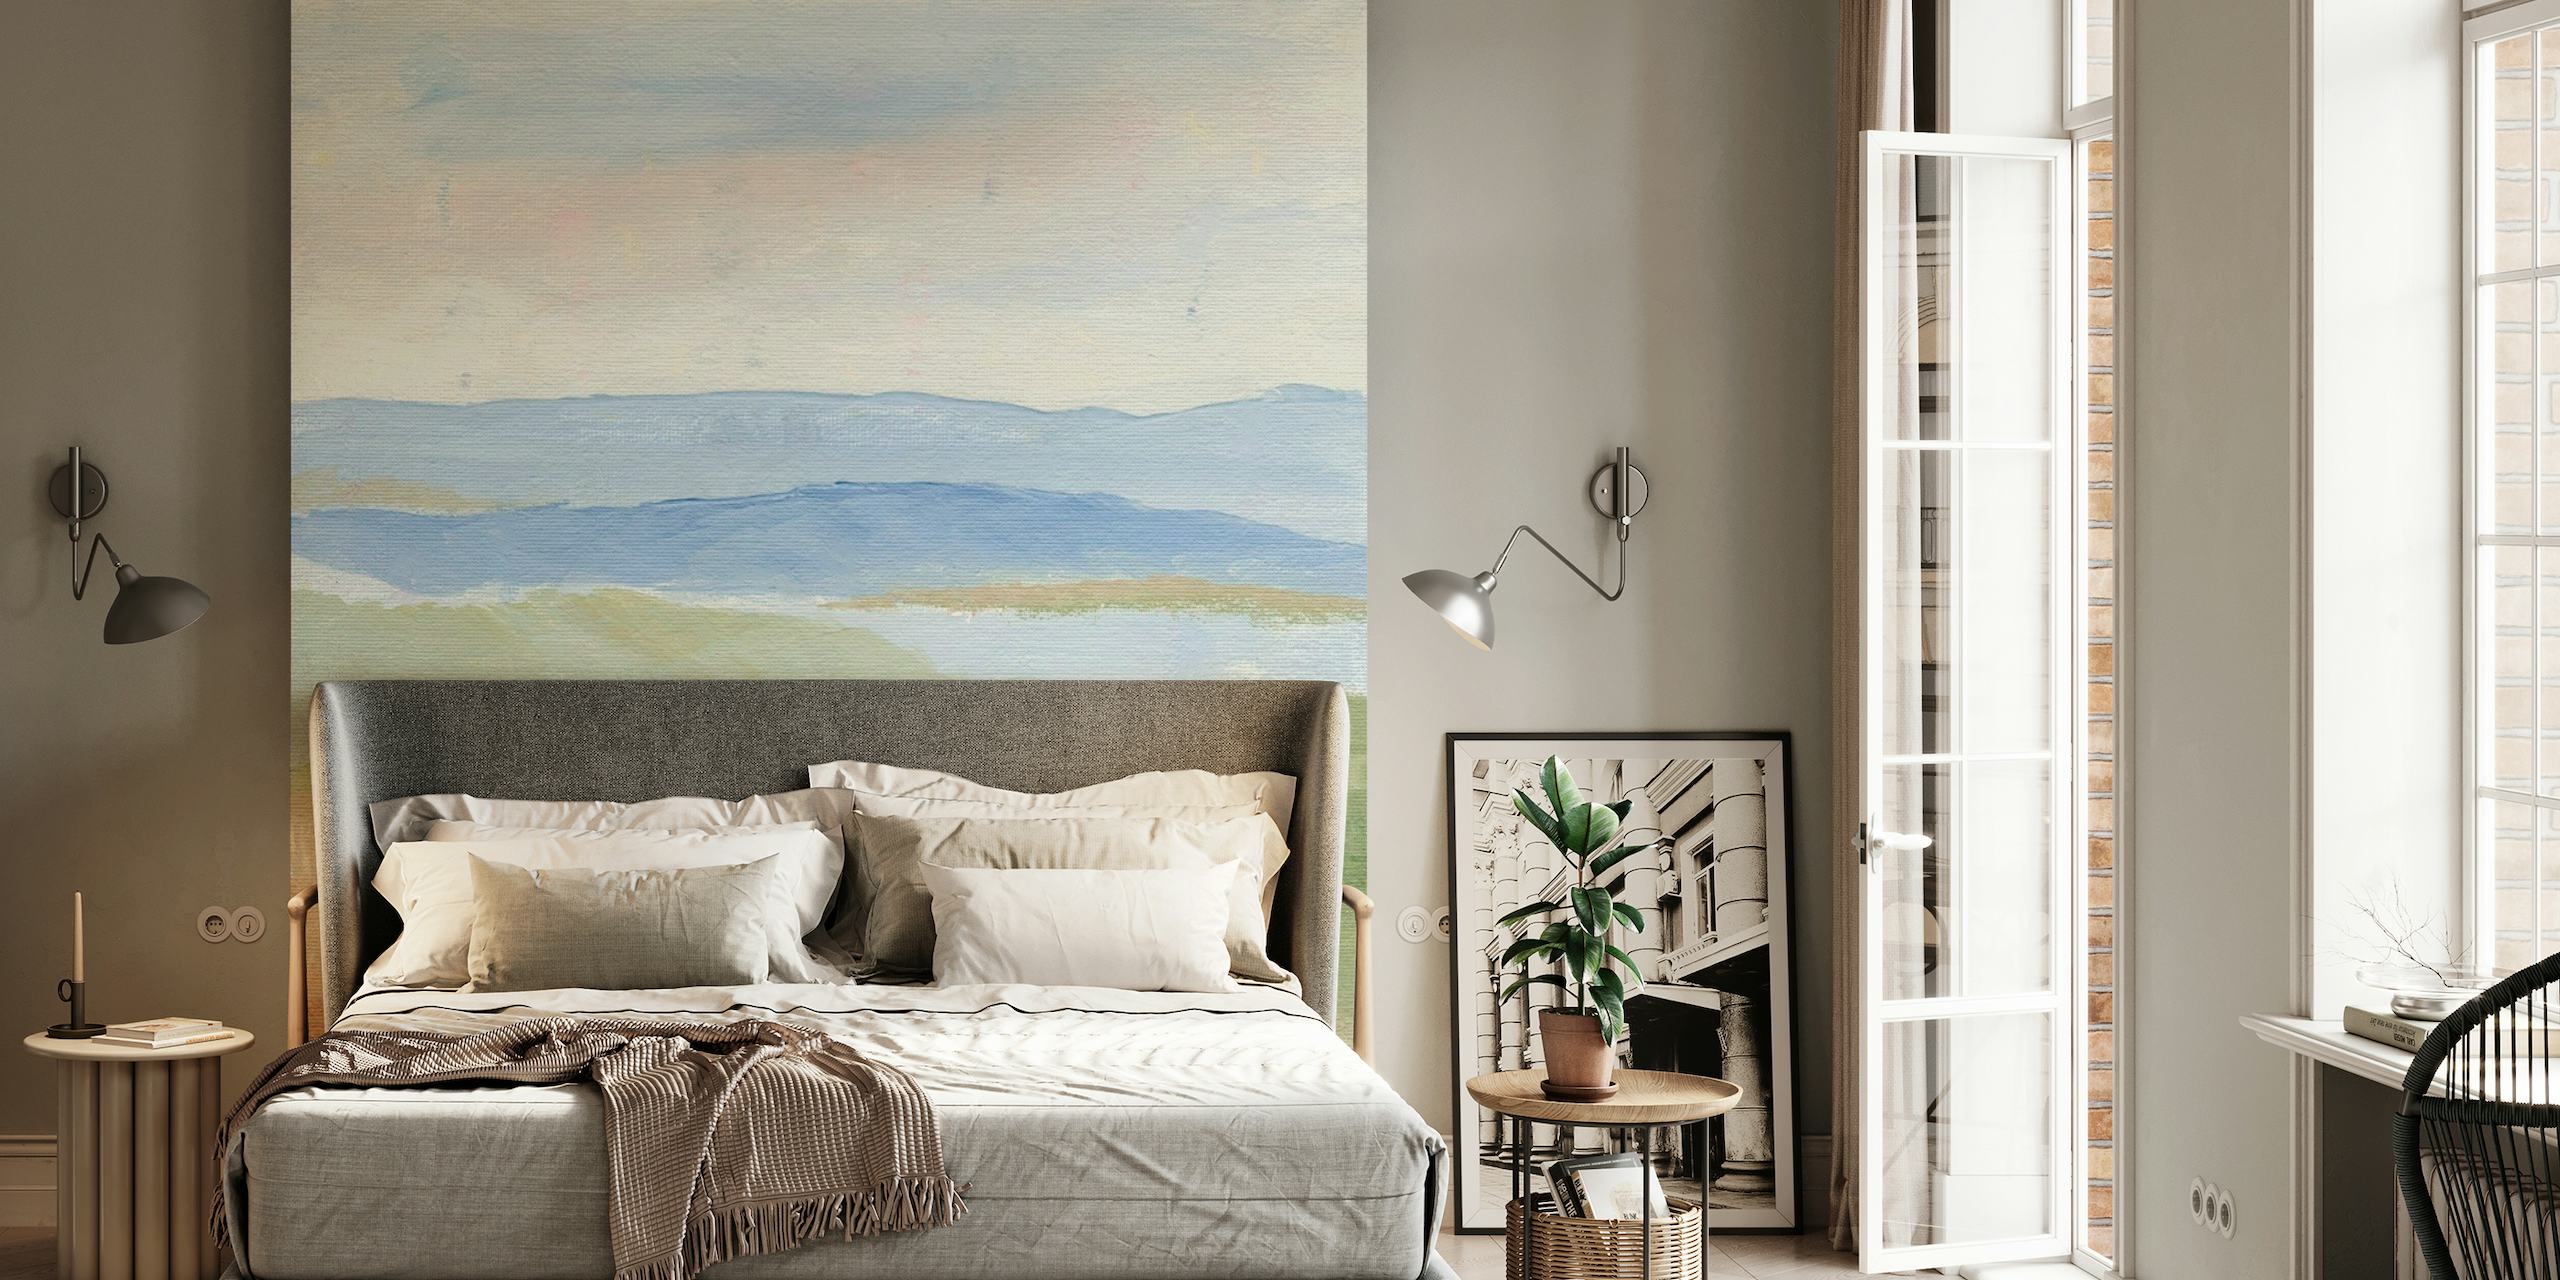 Papier peint paysage aquarelle représentant une scène sereine après une pluie avec une verdure douce et des collines lointaines